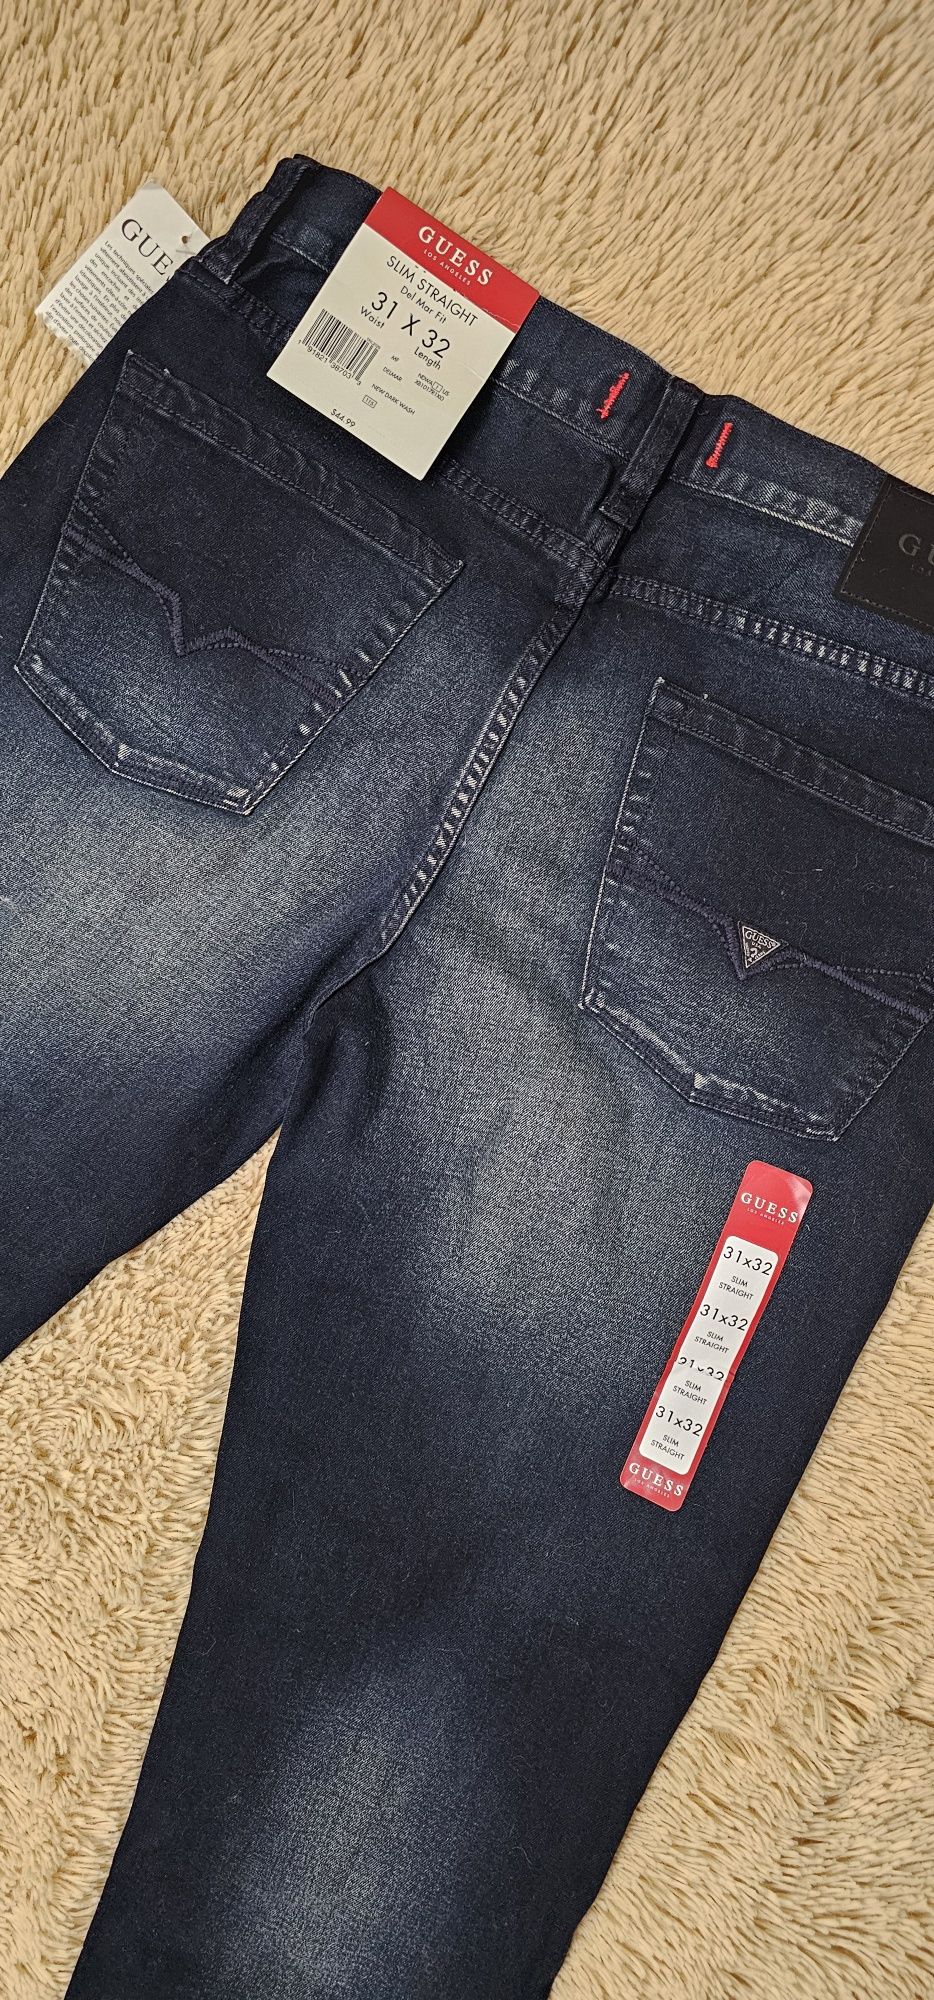 CUESS джинсы мужские новые, оригинал